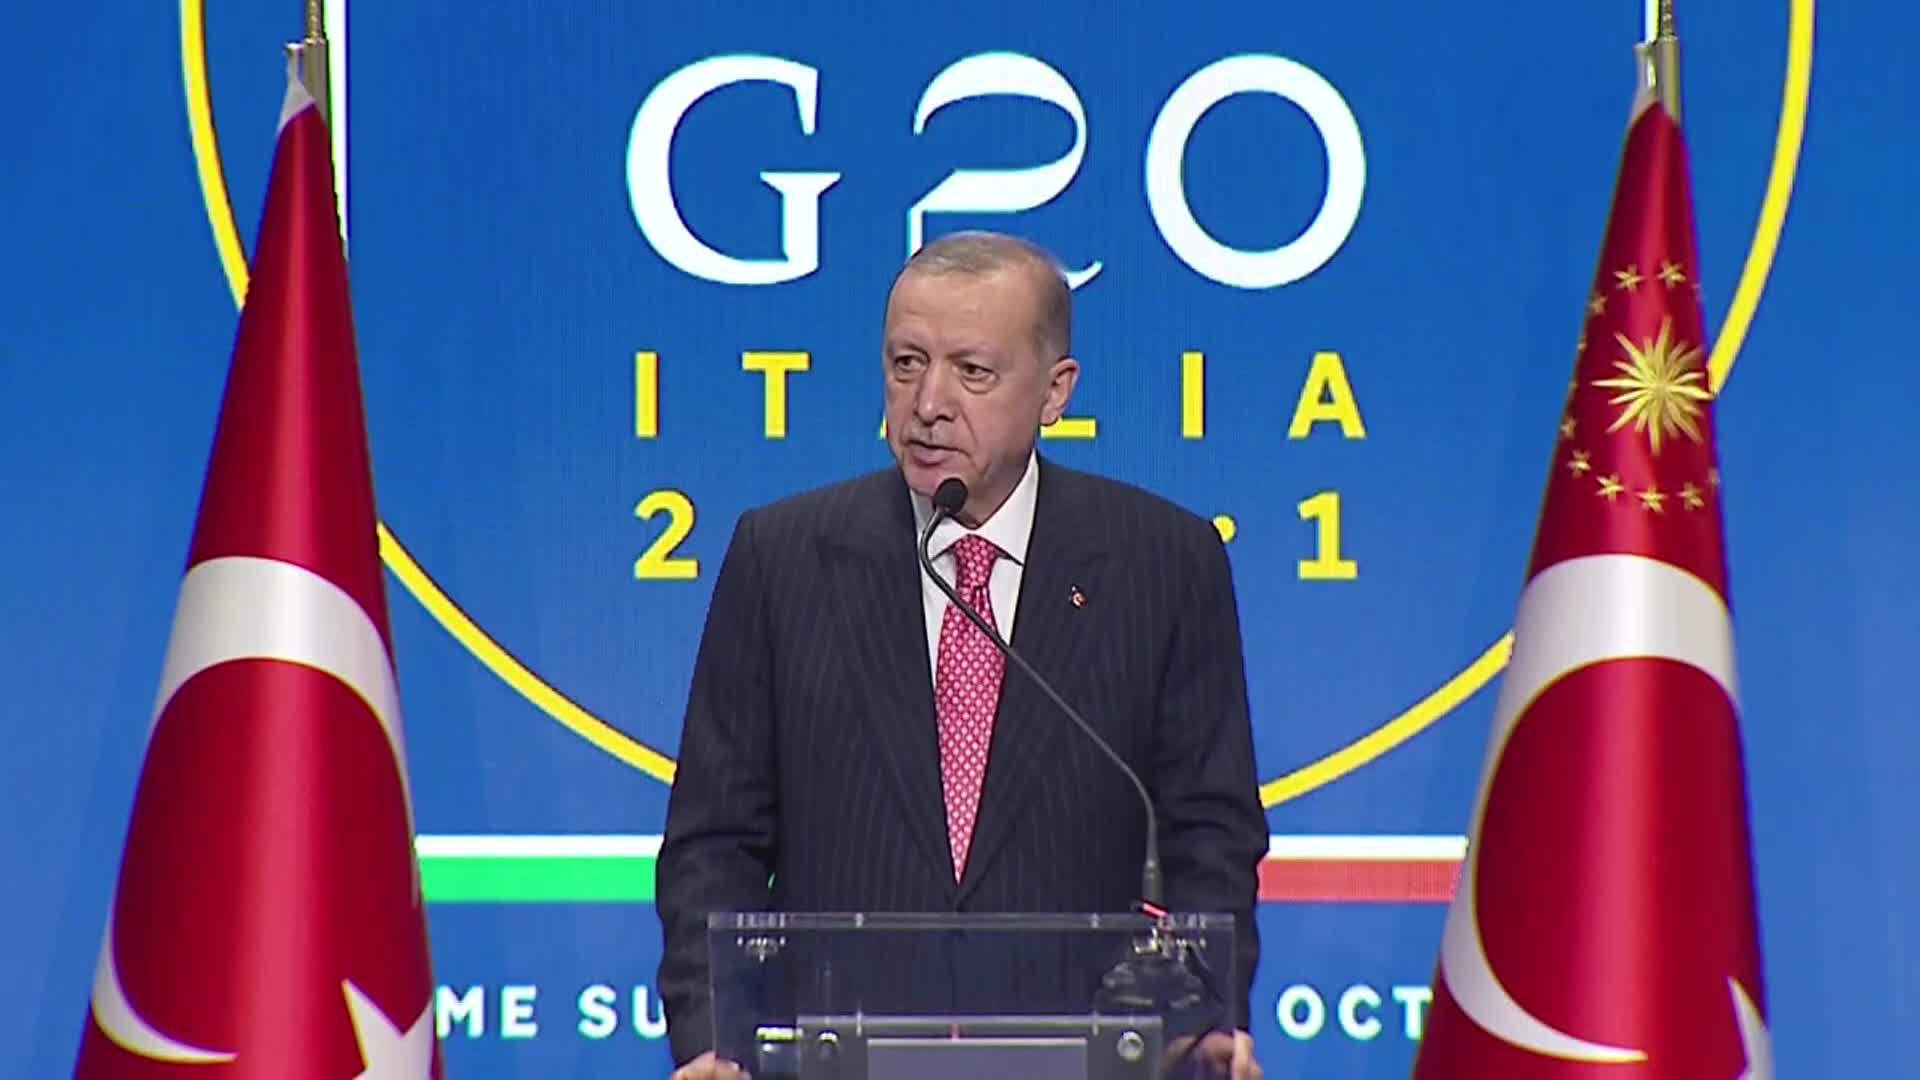 Cumhurbaşkanı Erdoğan'dan F-16 açıklaması: "Biden'ın olumlu yaklaşımını gördüm"